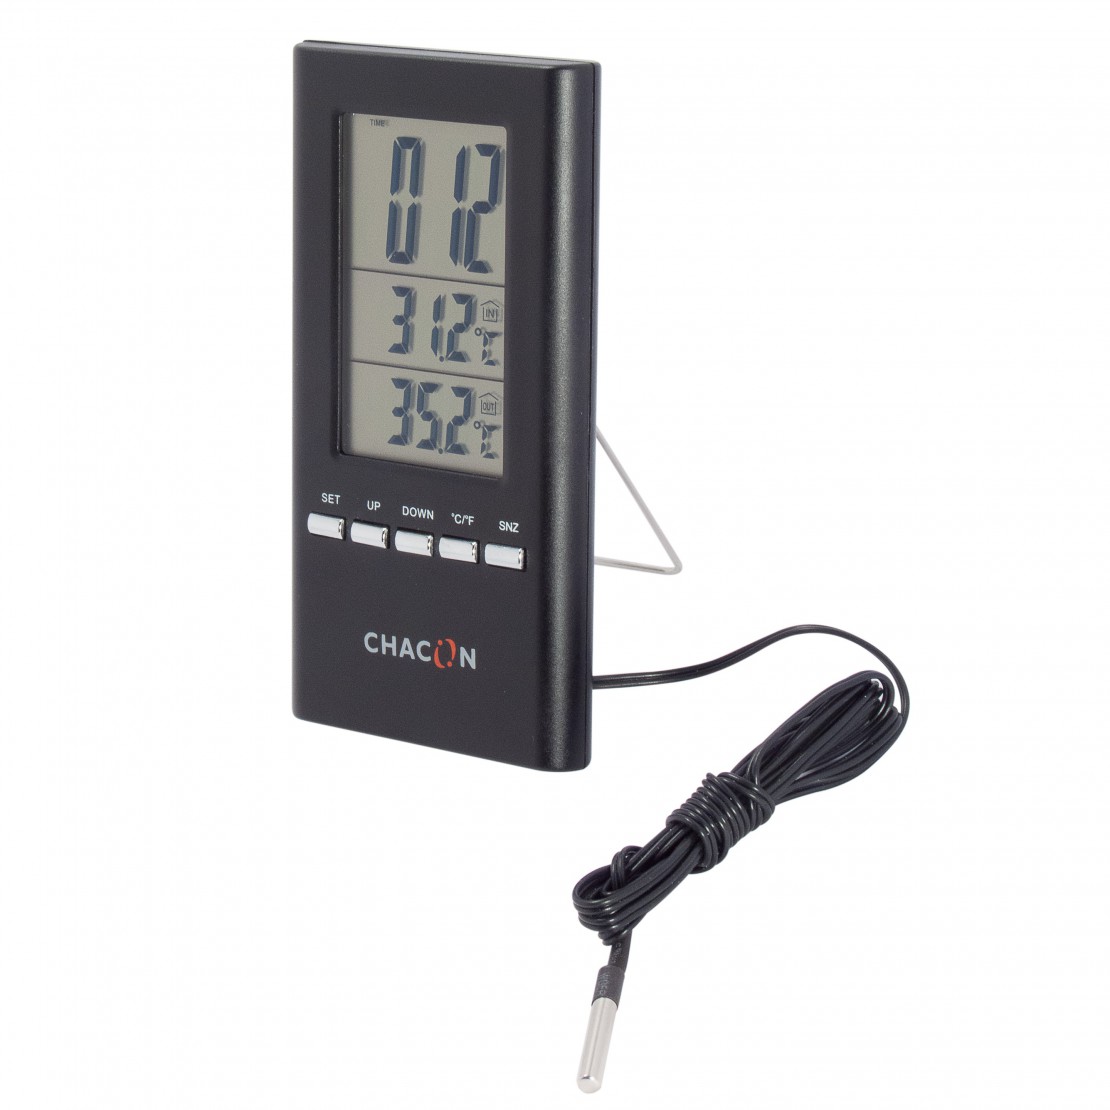 Thermomètre connecté à distance - Suivi température à distance TEKON